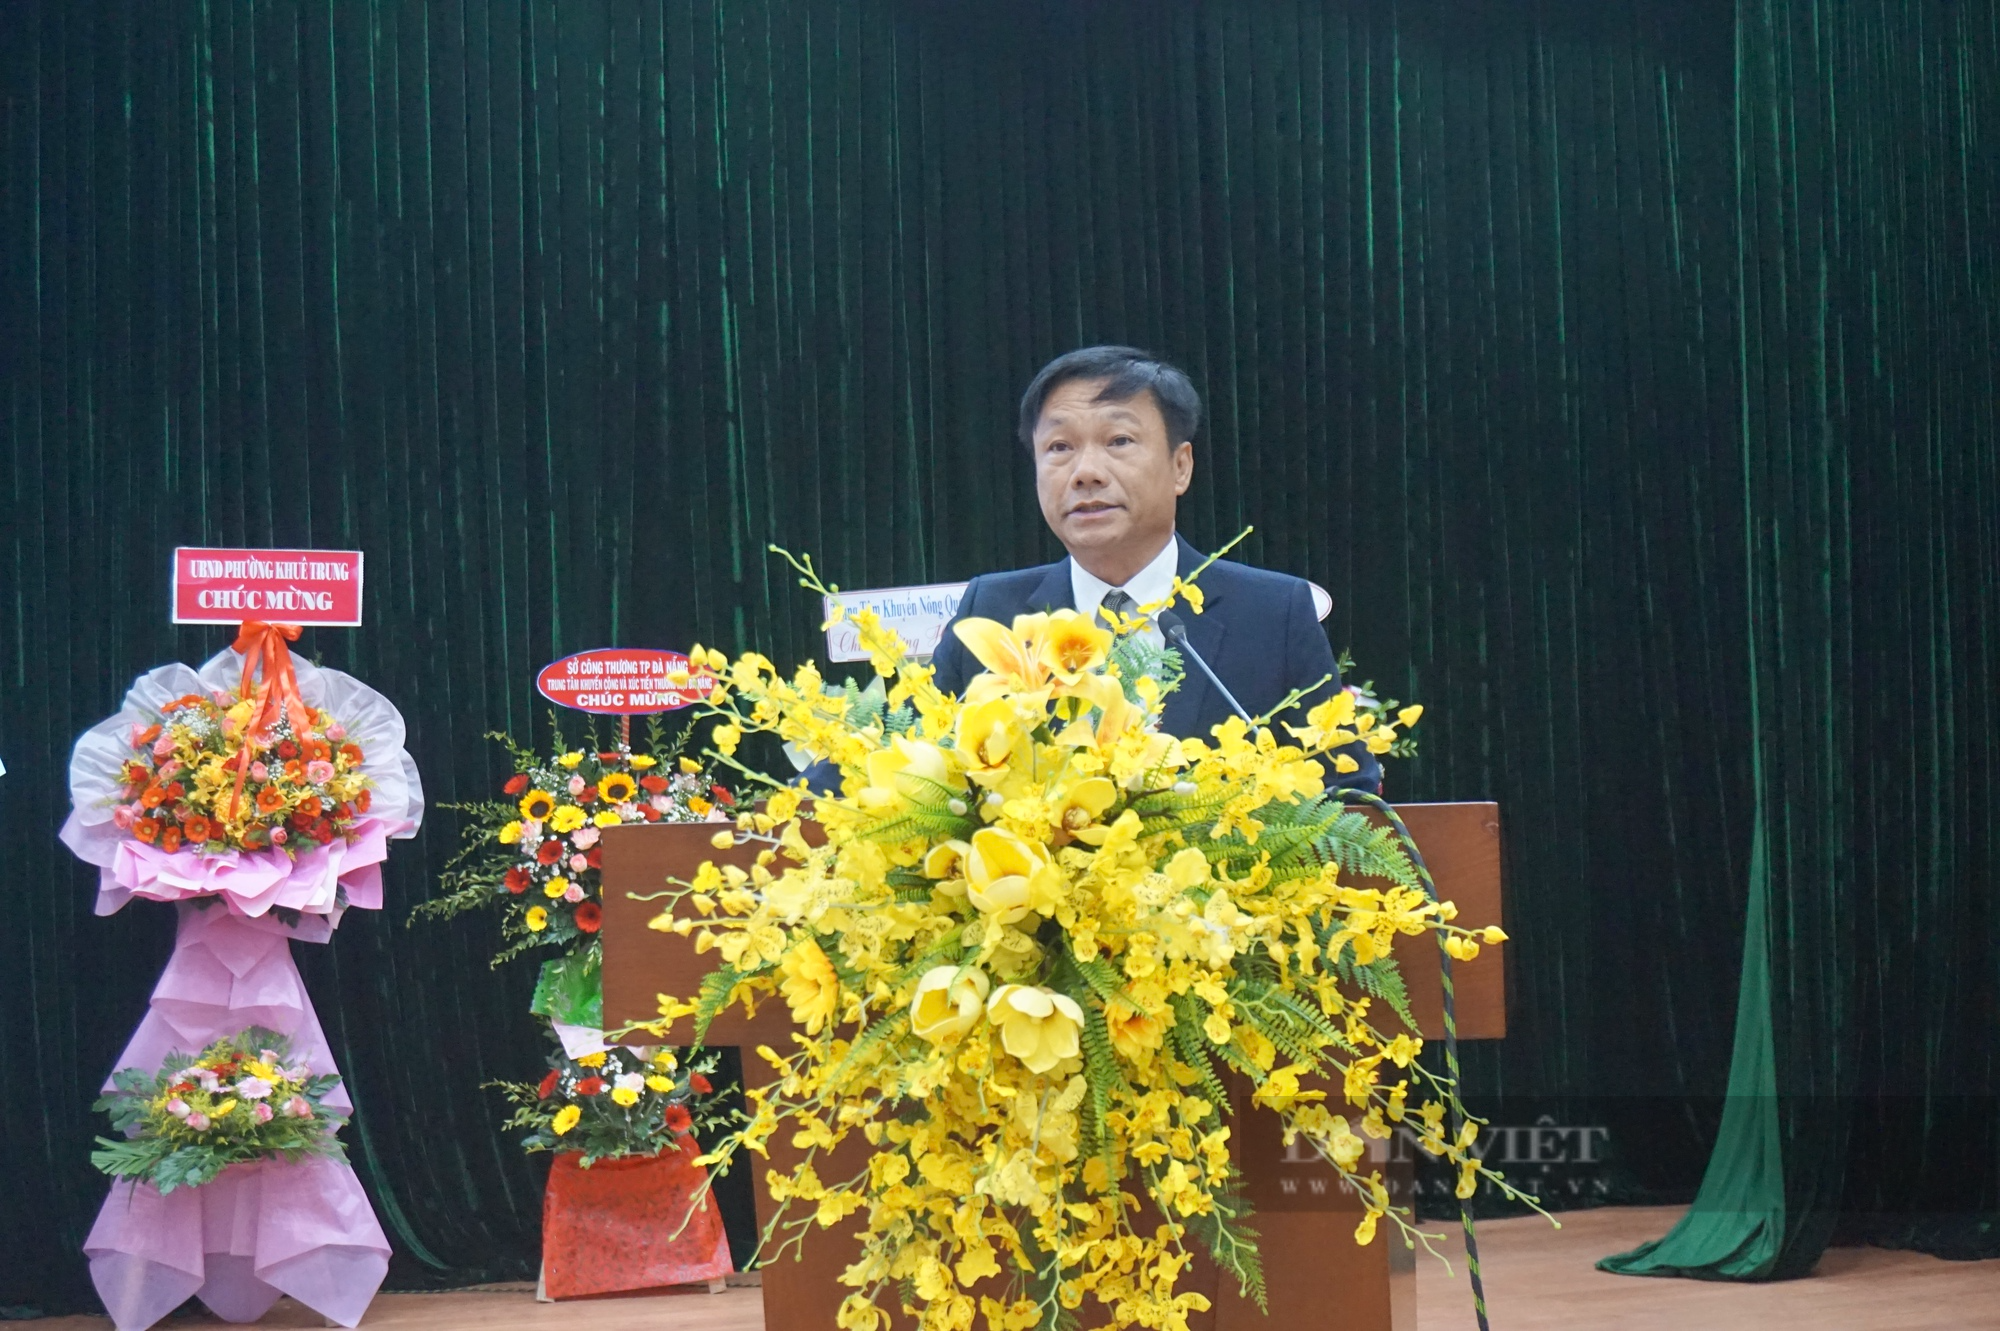 Trung tâm Khuyến ngư nông lâm Đà Nẵng tổng kết 30 năm sát cánh cùng nhà nông - Ảnh 5.